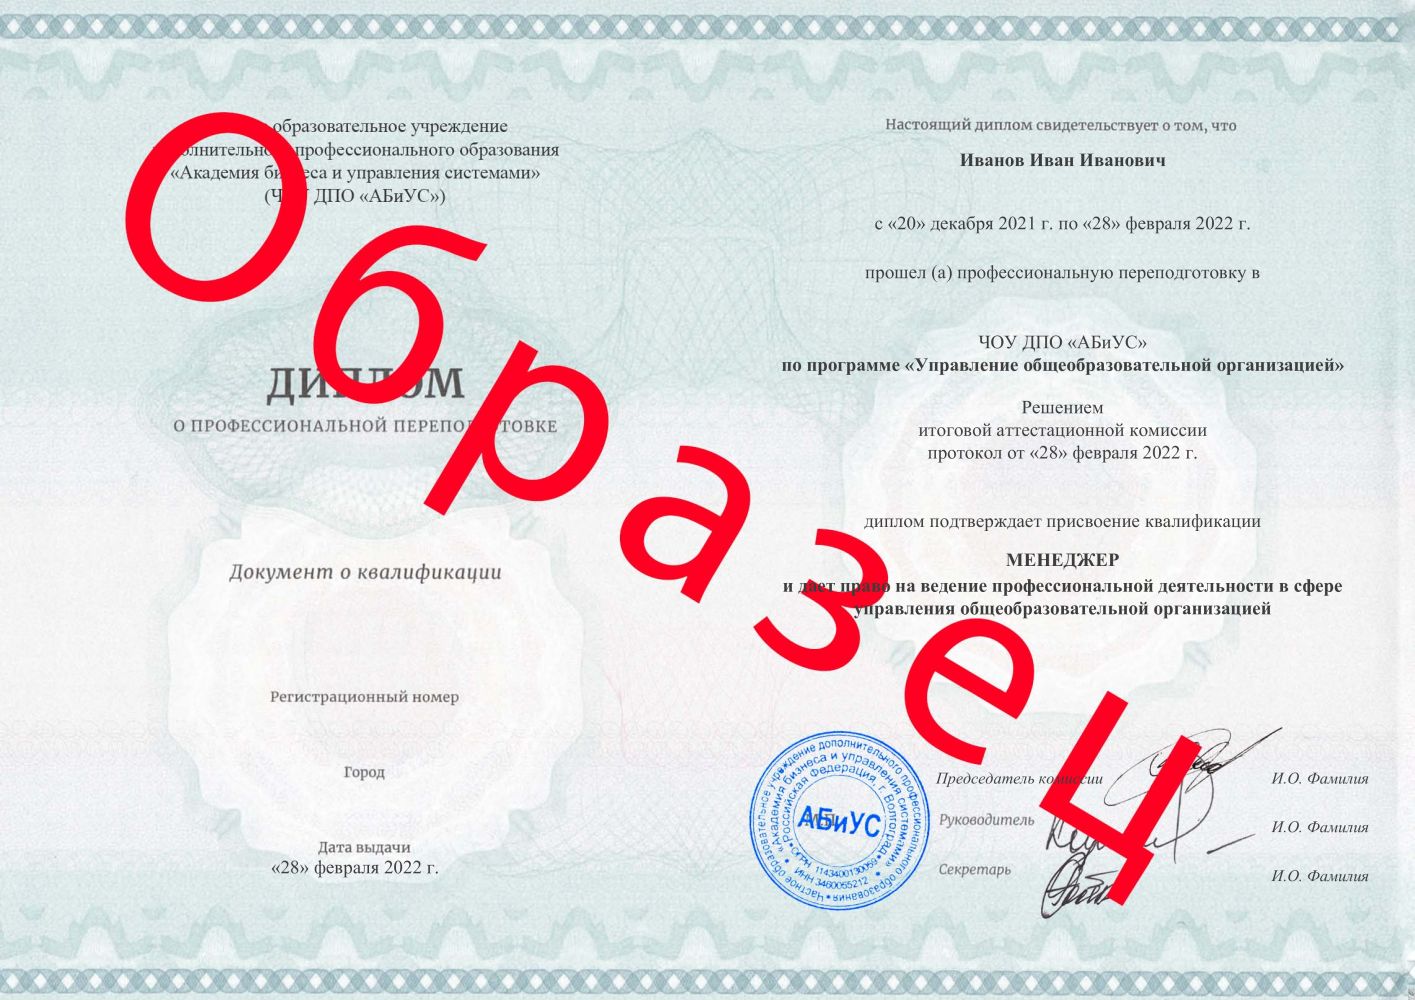 Диплом Управление общеобразовательной организацией 260 часов 8188 руб.